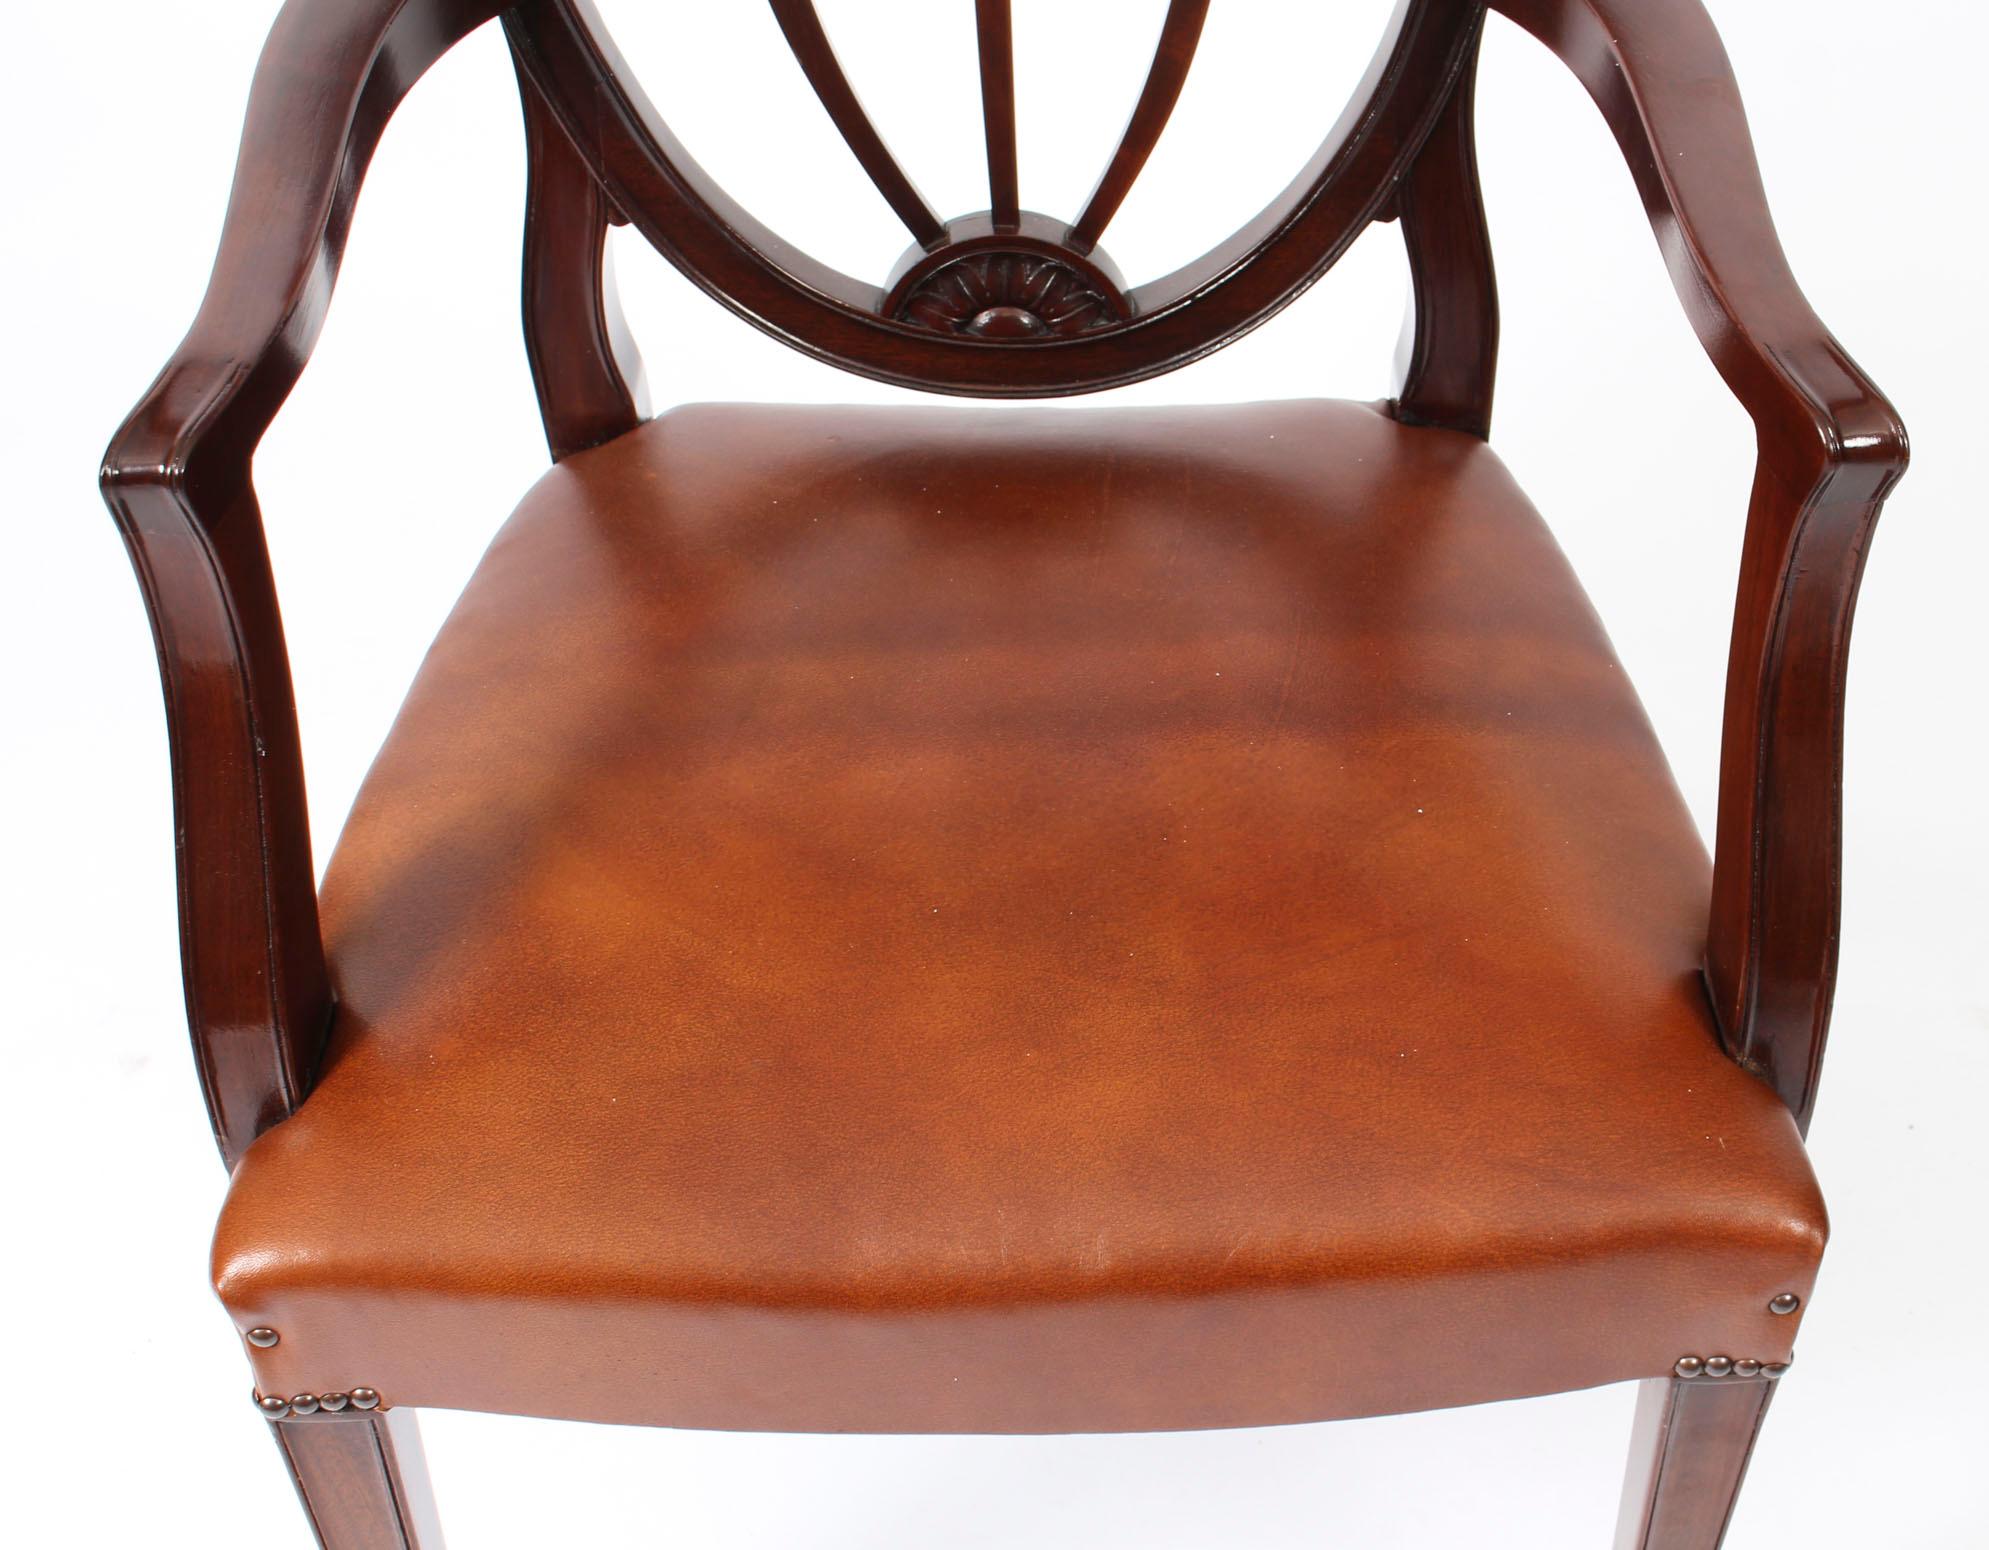 shield shaped chair backs